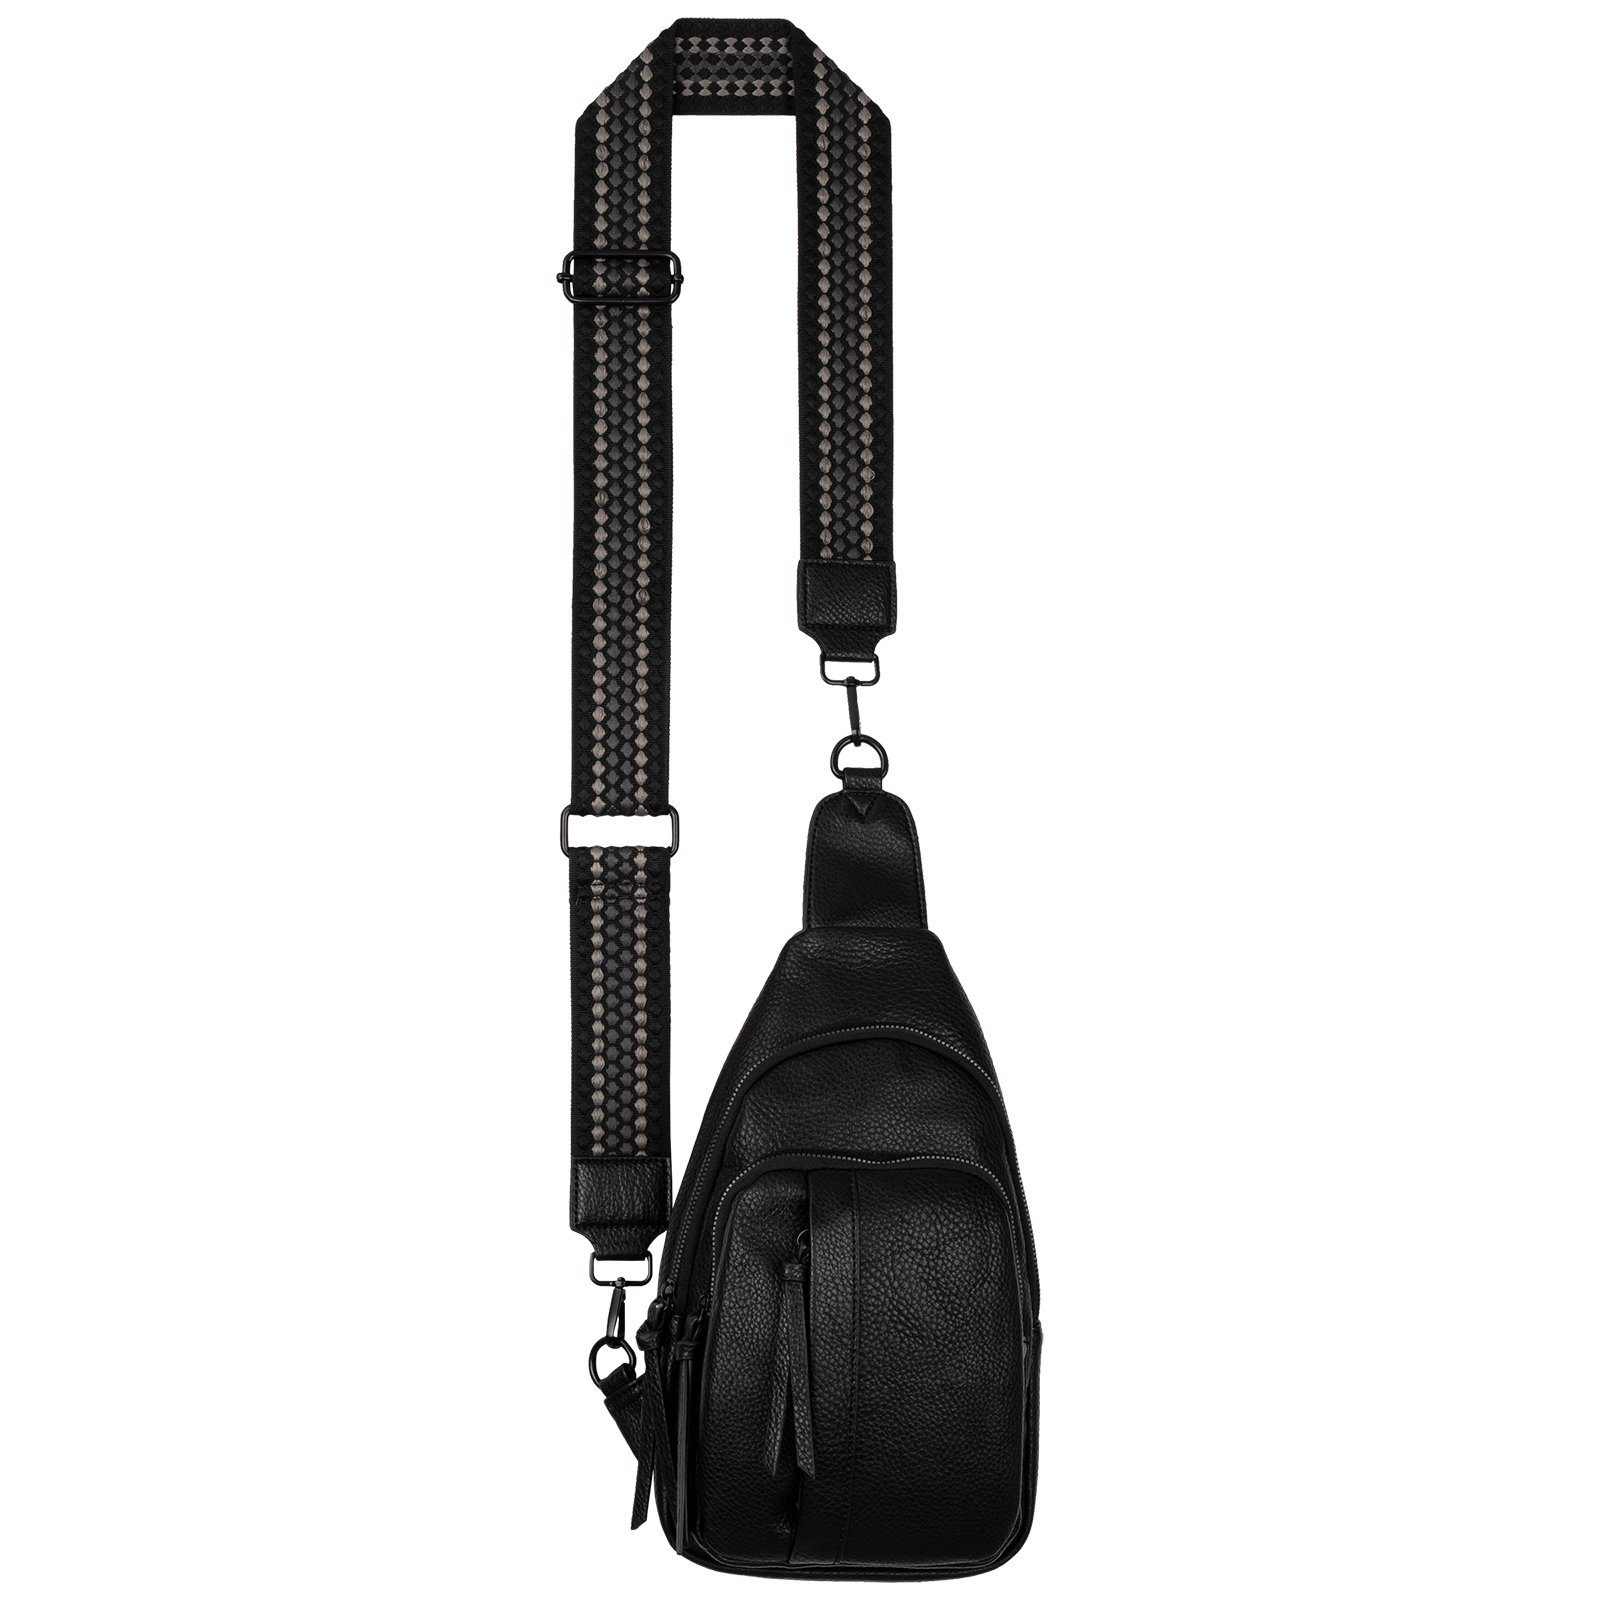 EAAKIE Umhängetasche Brusttasche Umhängetasche Schultertasche Cross Body Bag Kunstleder, als Schultertasche, CrossOver, Umhängetasche tragbar BLACK | Umhängetaschen